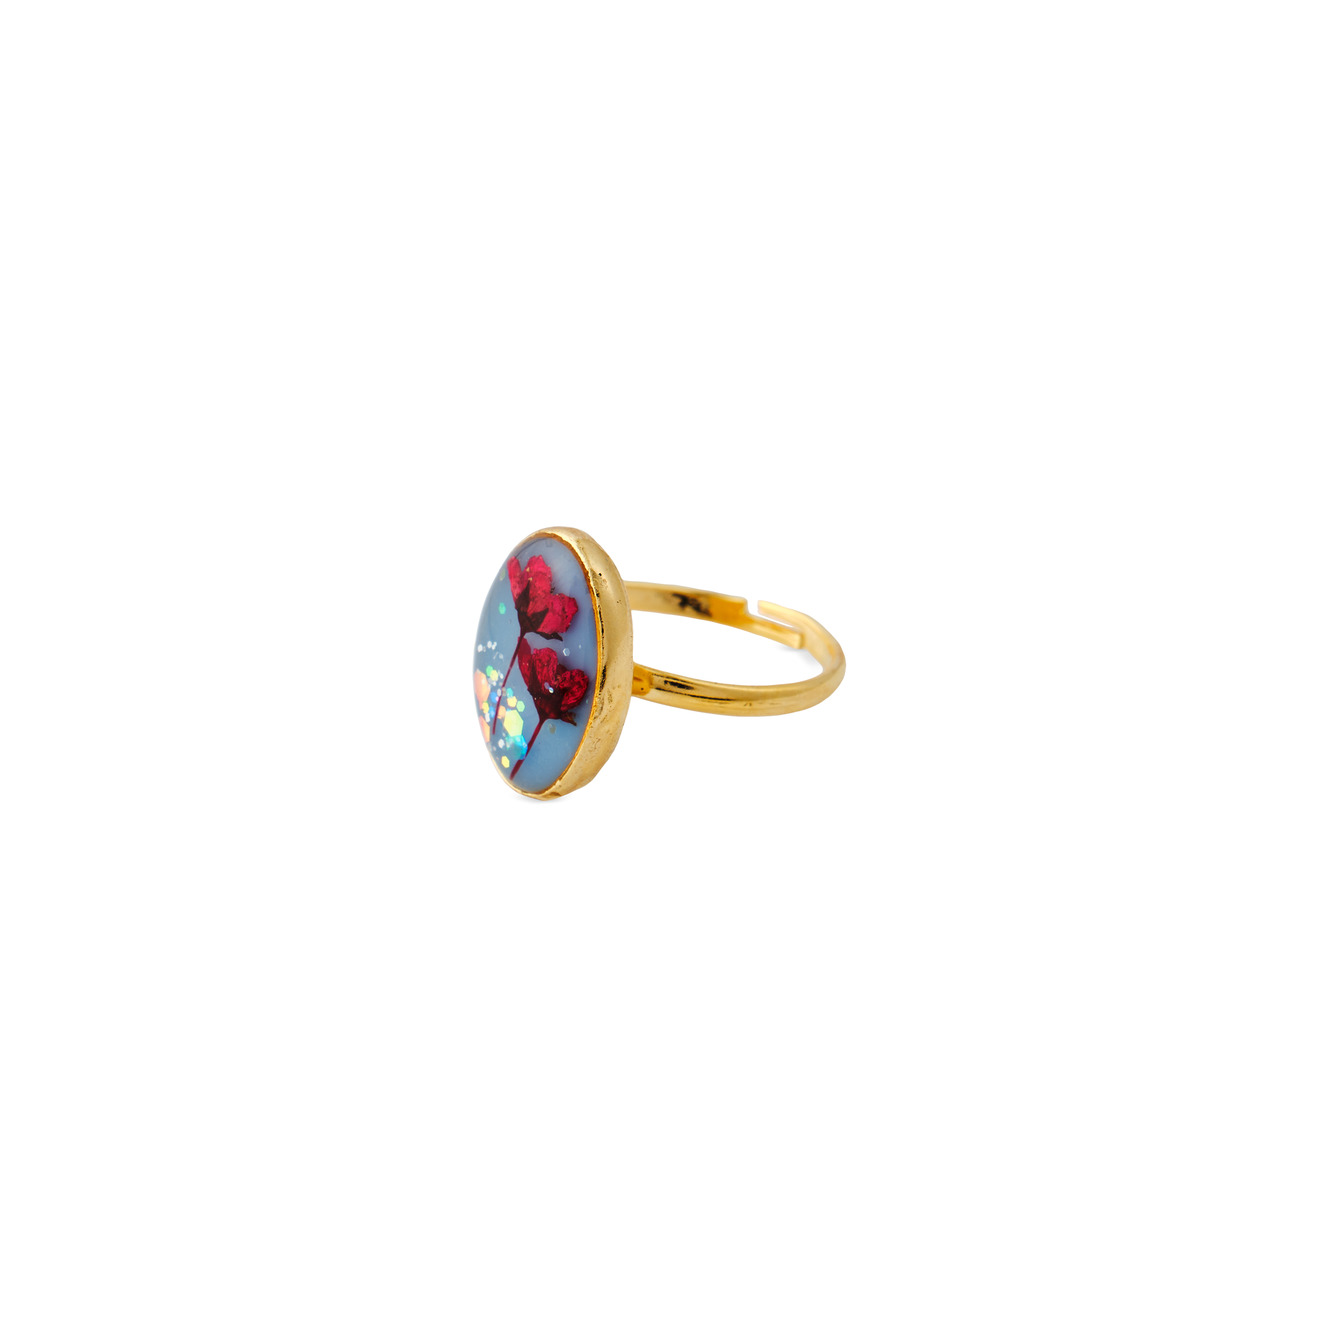 wisteria gems золотистое колье с натуральным жемчугом и зелеными бусинами Wisteria Gems Золотистое овальное голубое кольцо с красными цветками